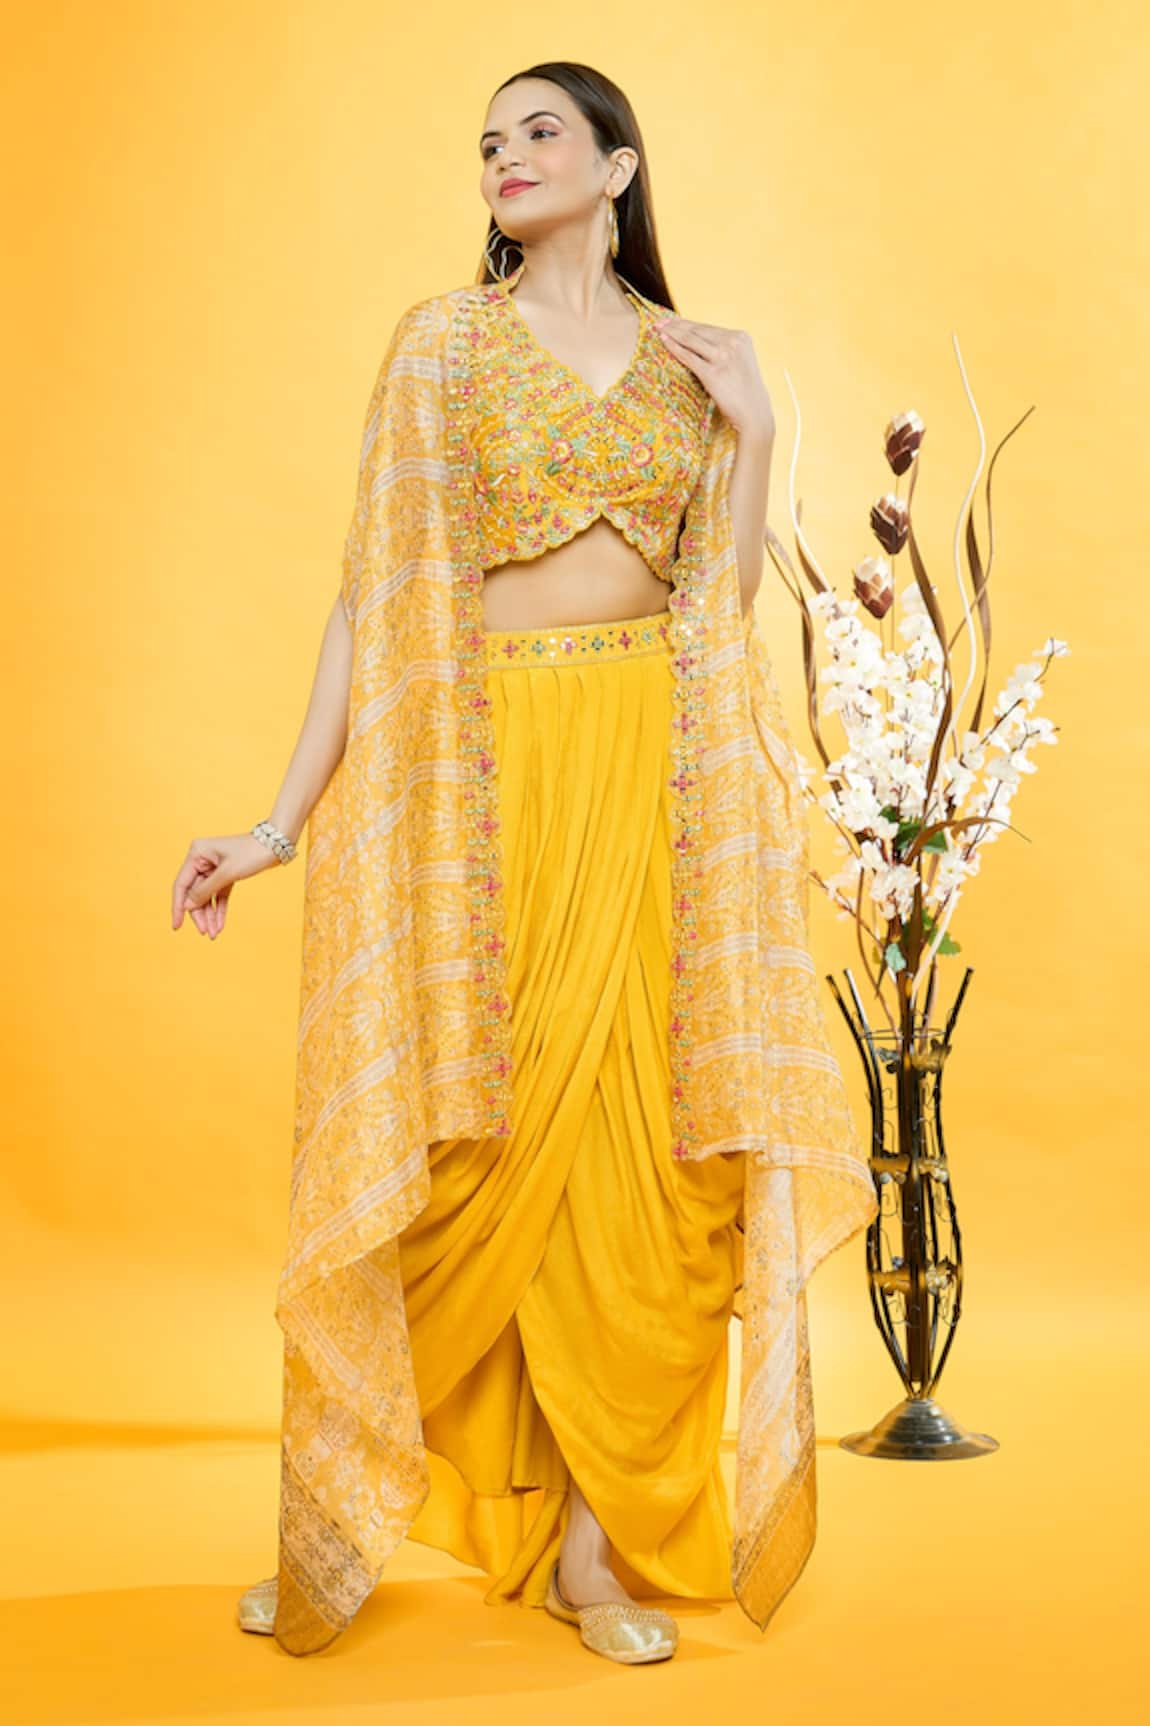 Aryavir Malhotra Chandelier Print Cape & Dhoti Skirt Set